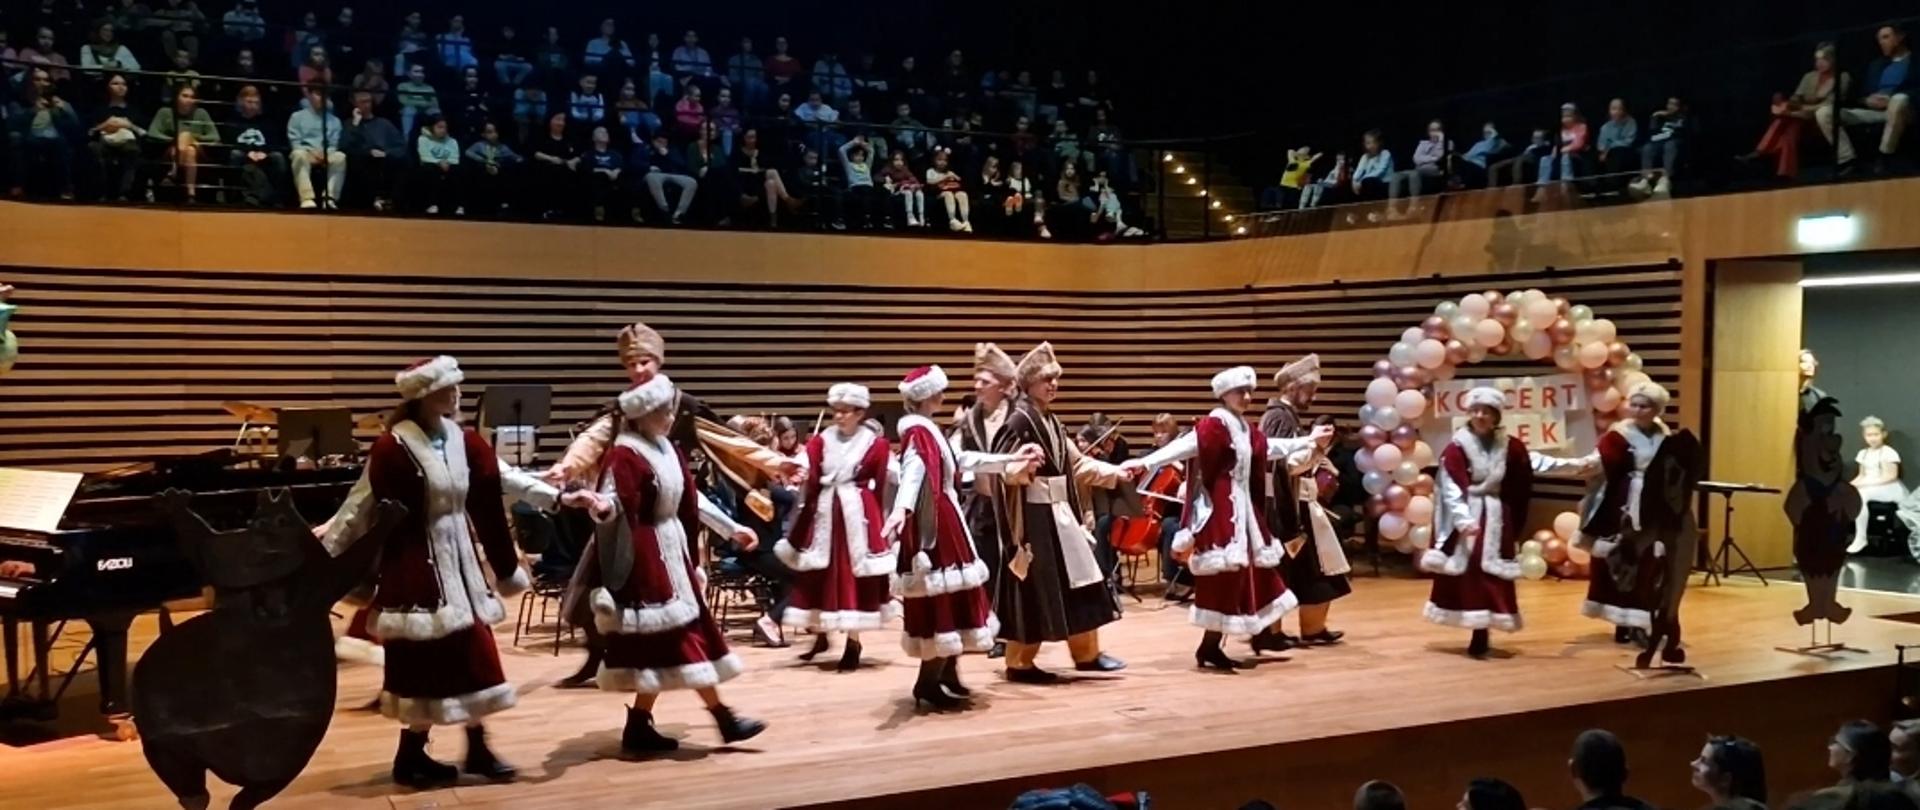 Siedem kobiet i czwórka mężczyzn tańczą w szlacheckich strojach na scenie sali koncertowej, z przodu i nad sceną widać publiczność.